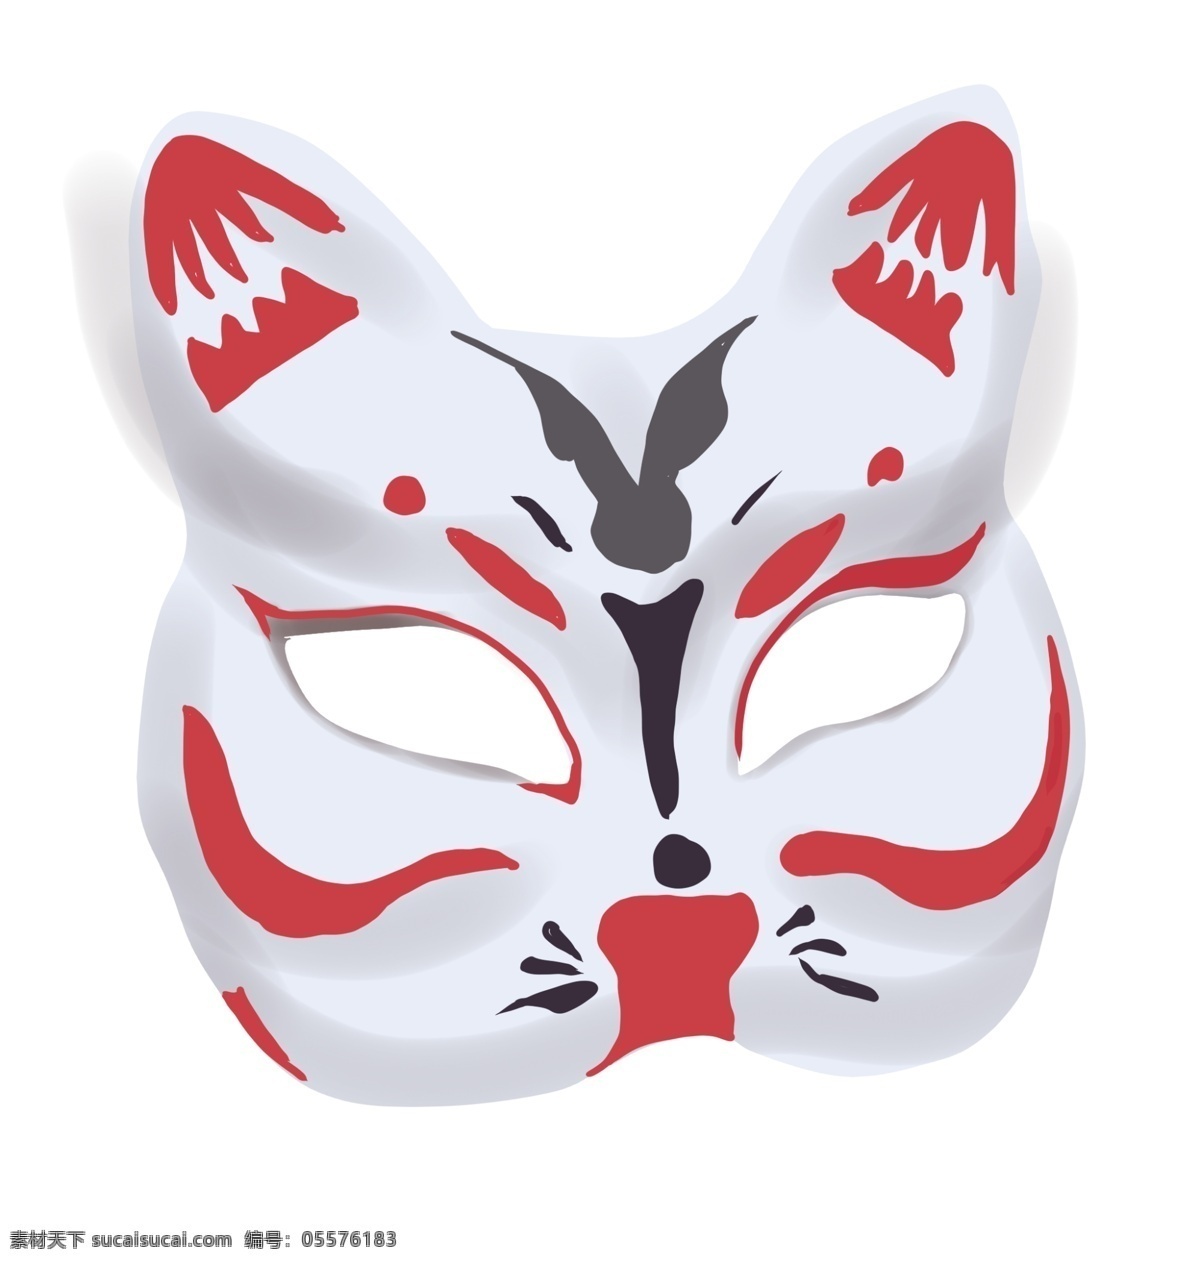 日本 猫咪 面具 插画 可爱的猫咪 卡通插画 日本插画 日本特产 日本风情 日本物品 猫咪的面具